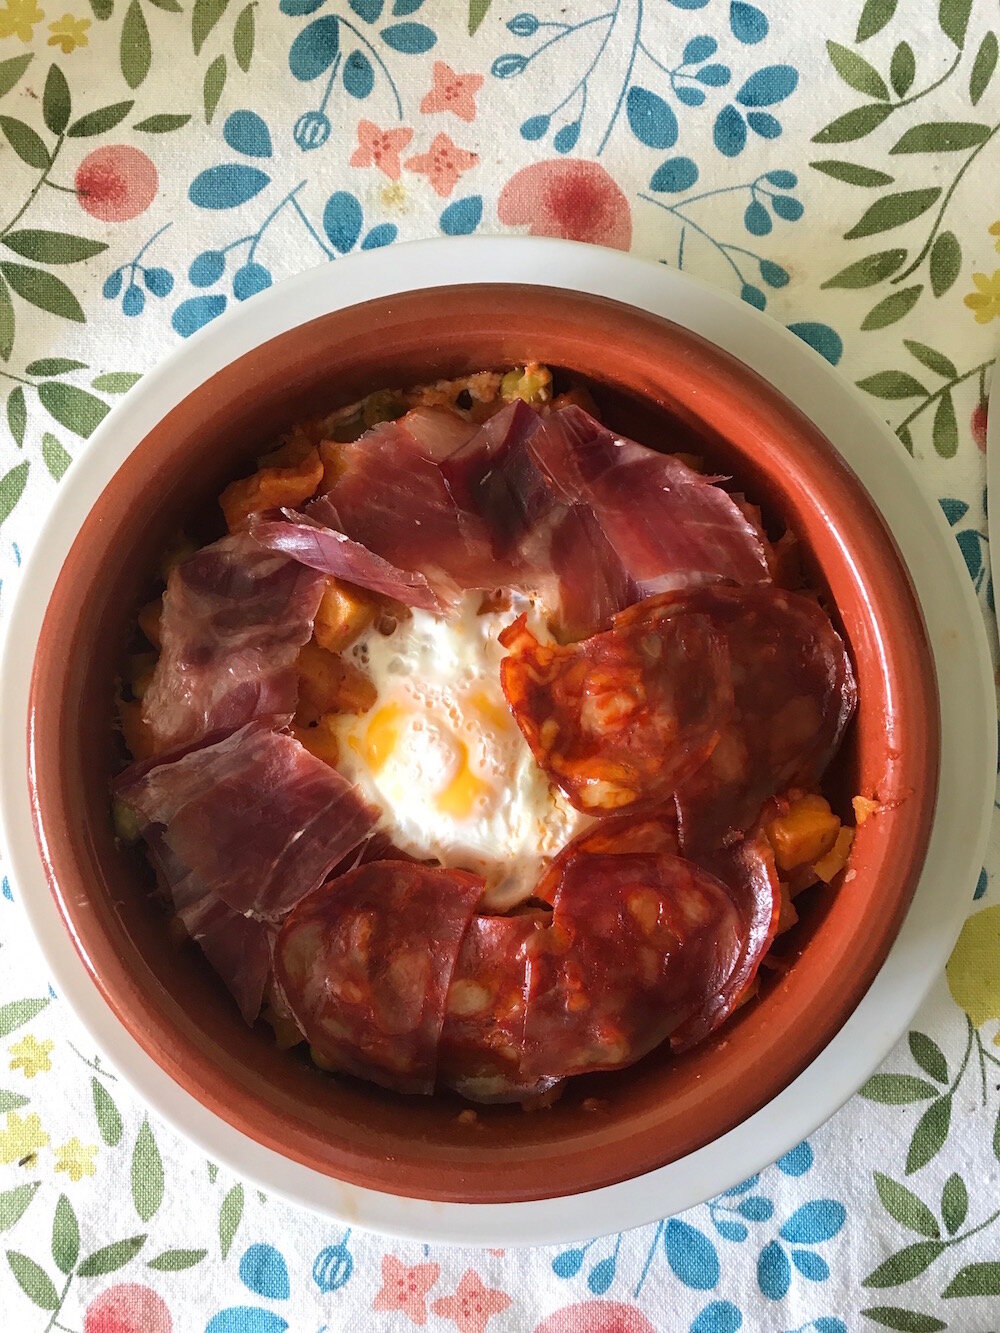 Cómo preparar unos Huevos a la flamenca de diez — Biendespachao